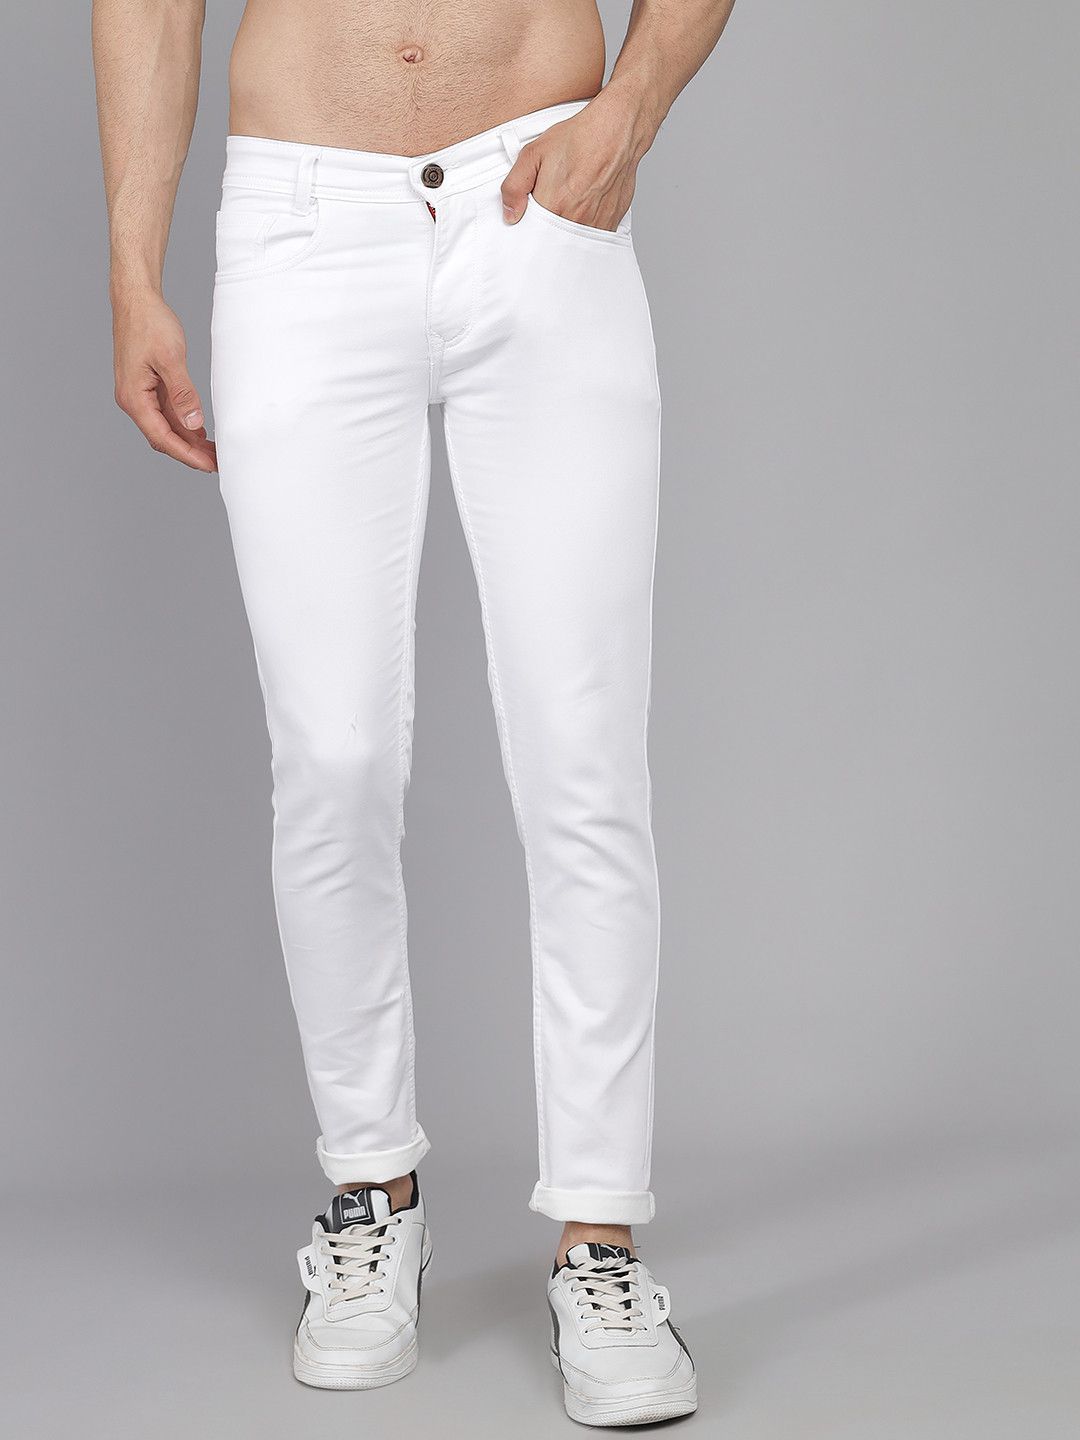 PODGE - White Denim Slim Fit Men's Jeans ( Pack of 1 )